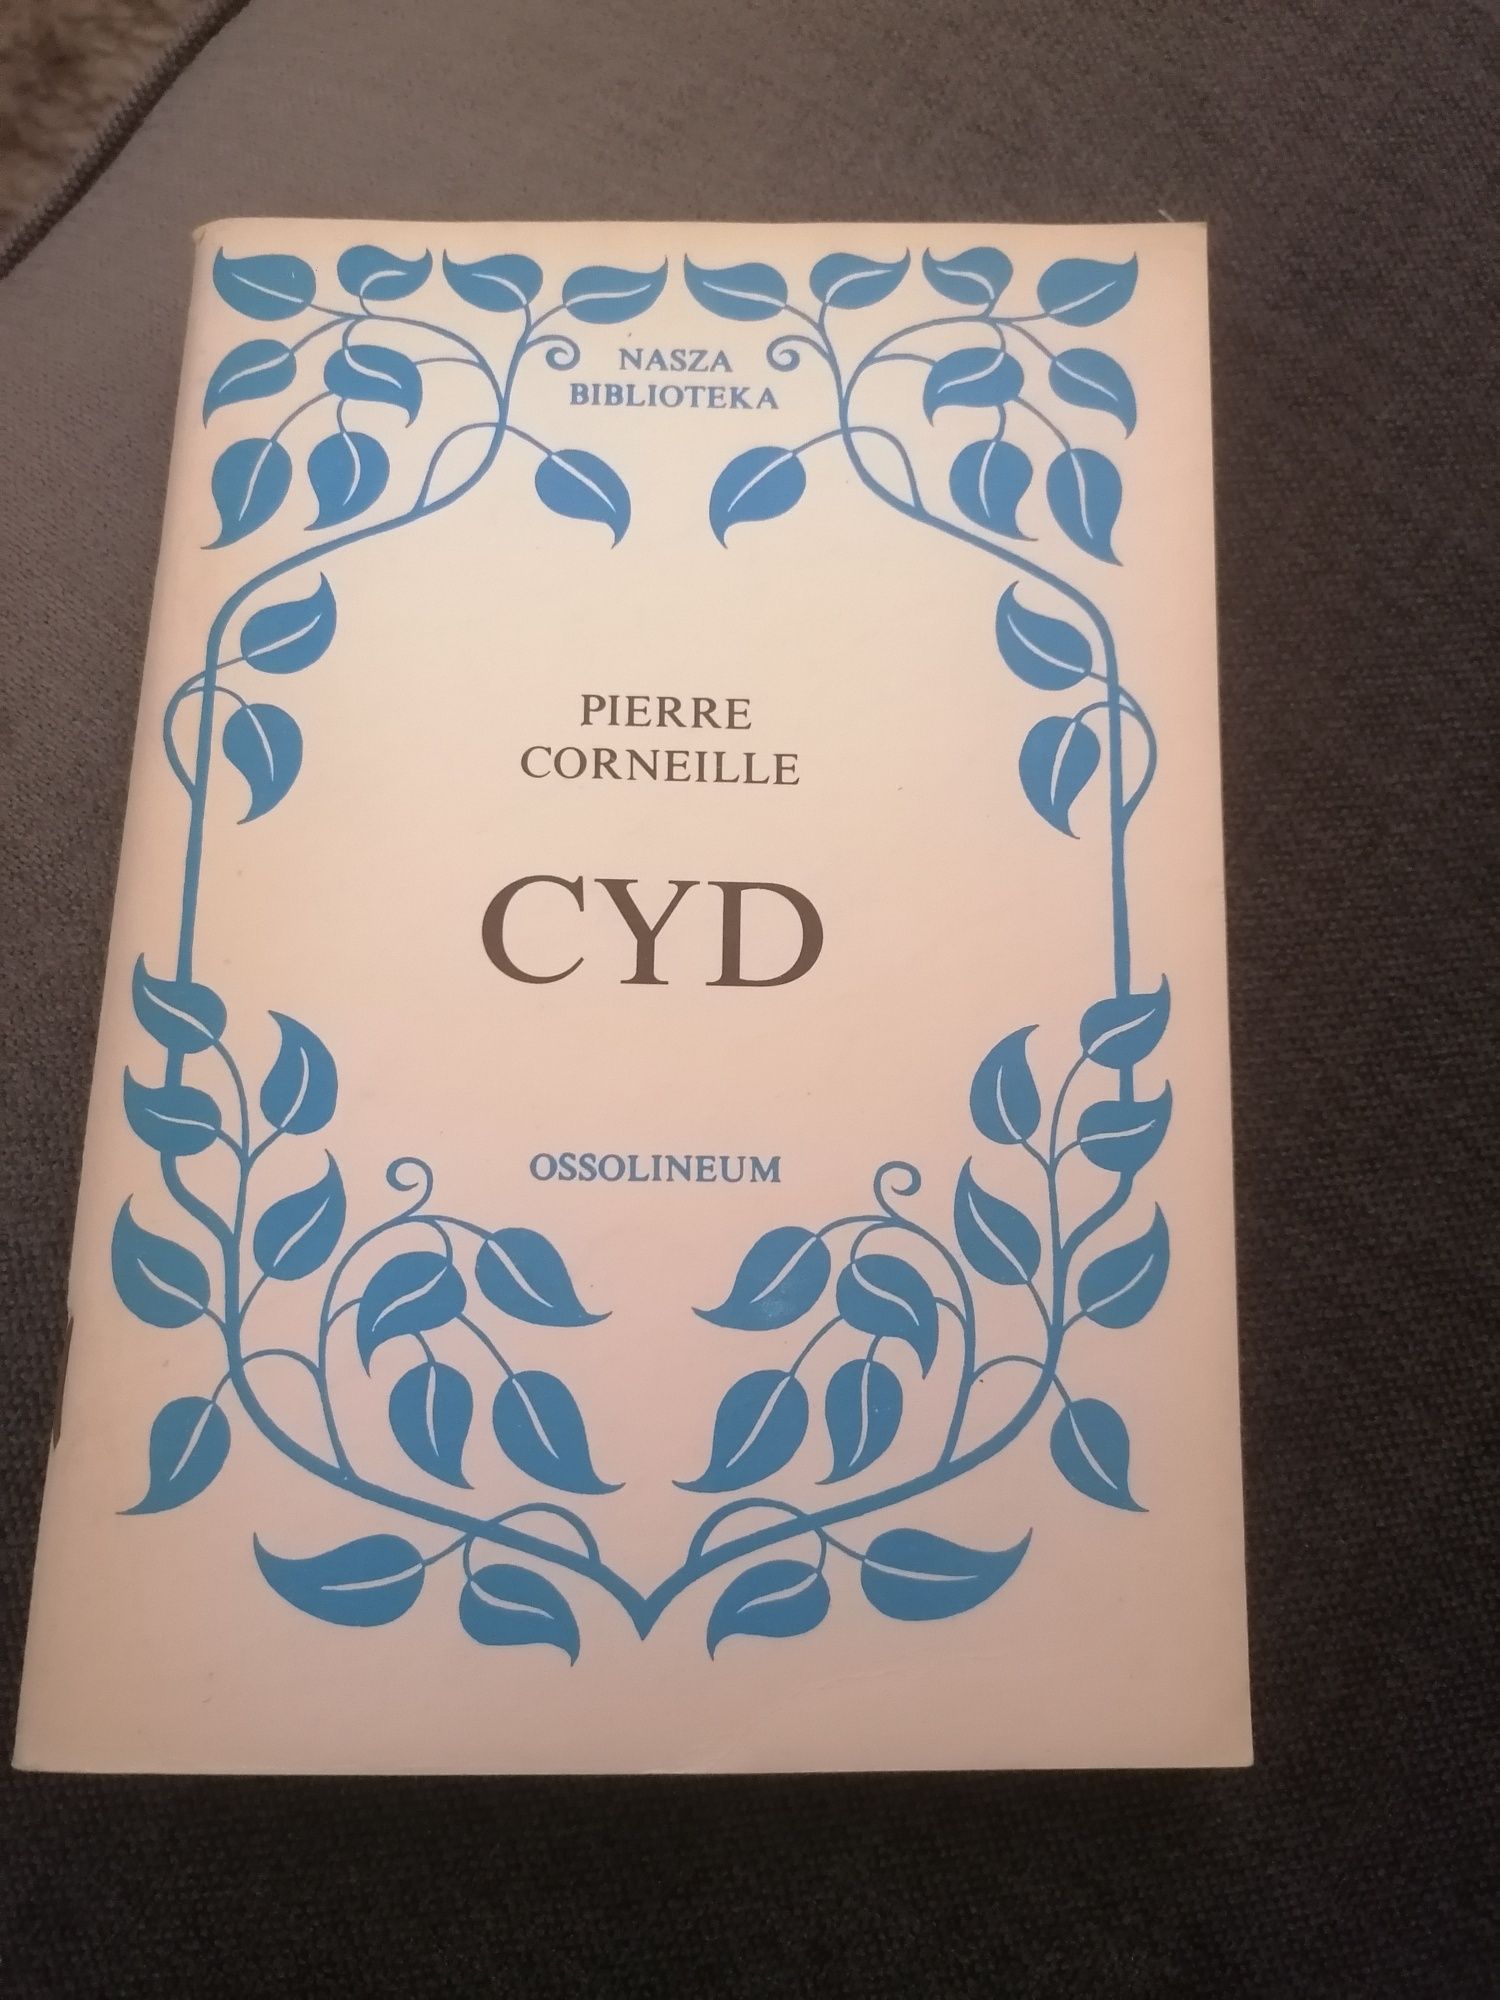 Pierre Corneille CYD